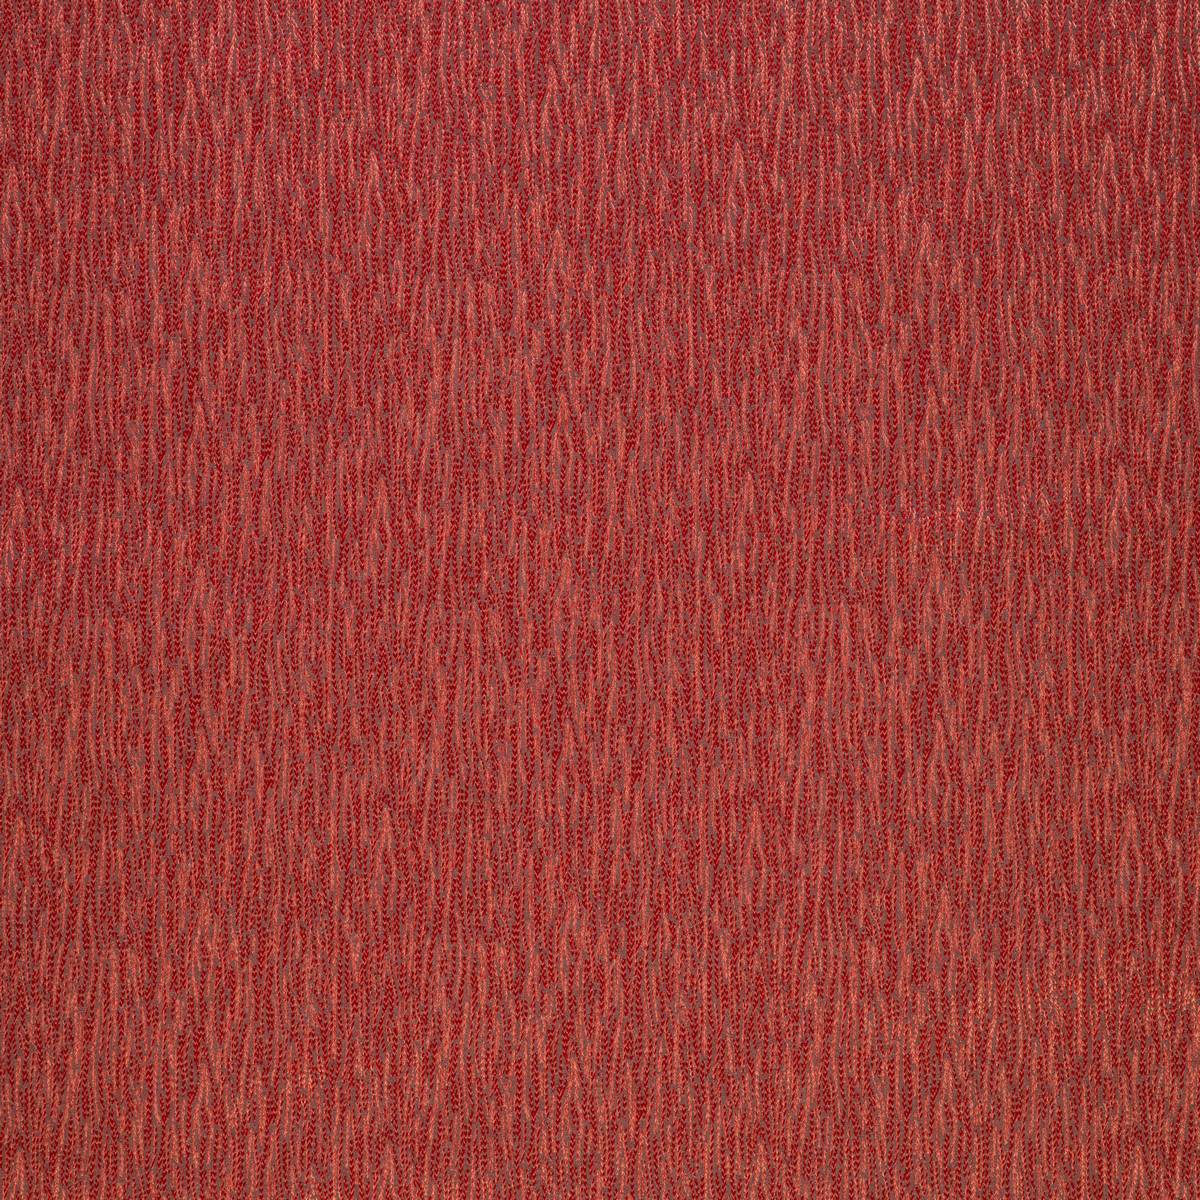 Marram Cranberry Fabric by Ashley Wilde